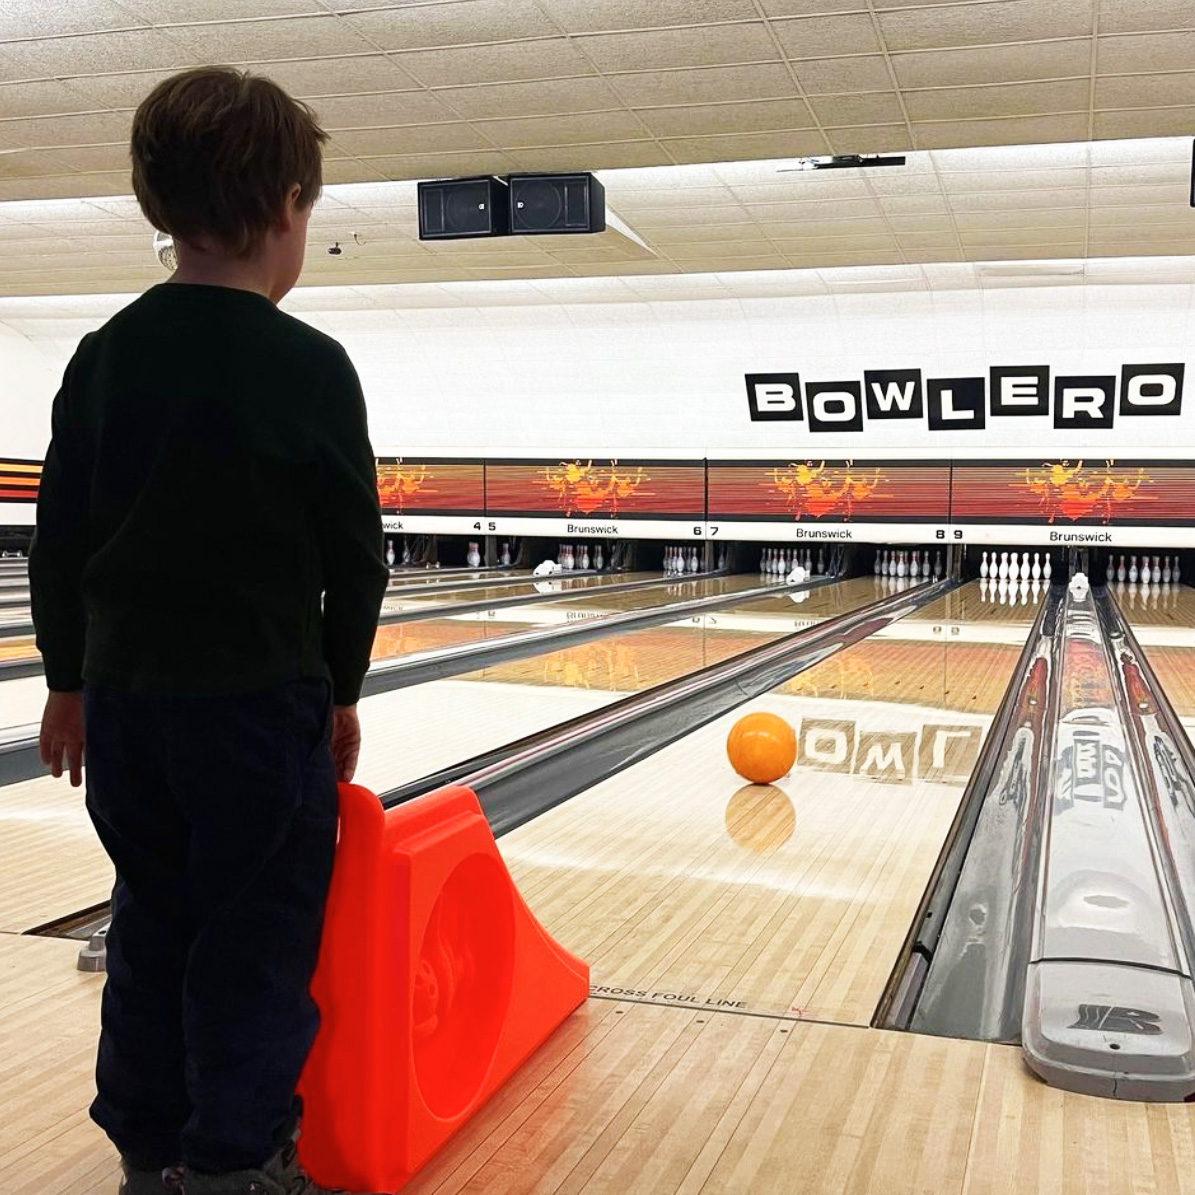 Child Bowling - Bowlero Lanes & Lounge, Royal Oak